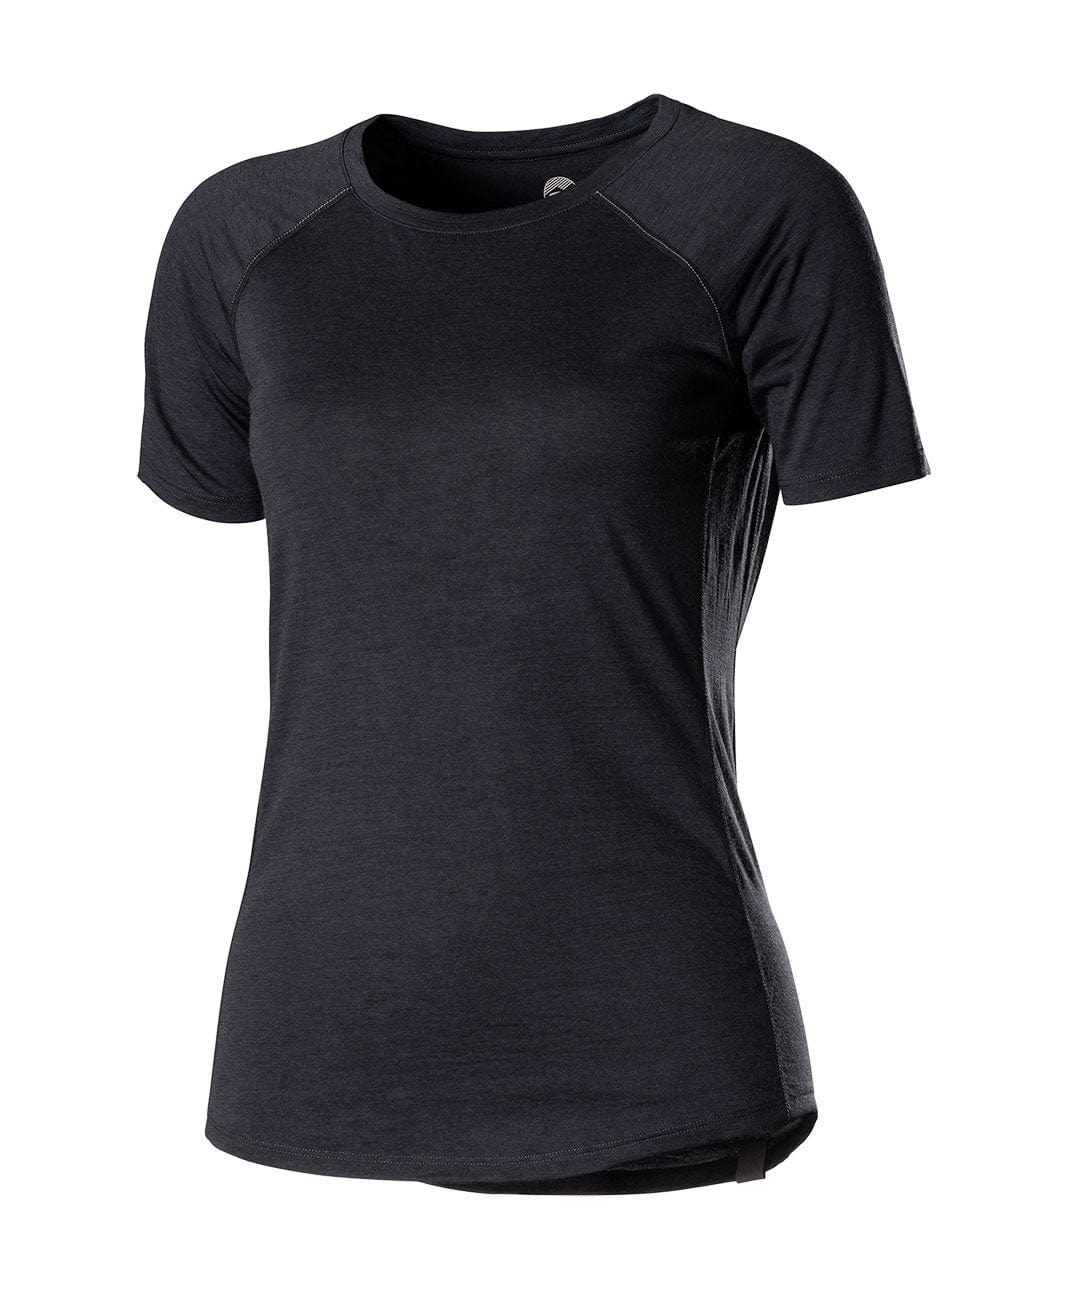 Women's Apex Merino Tech T-Shirt | Showers Pass UK – showerspassuk